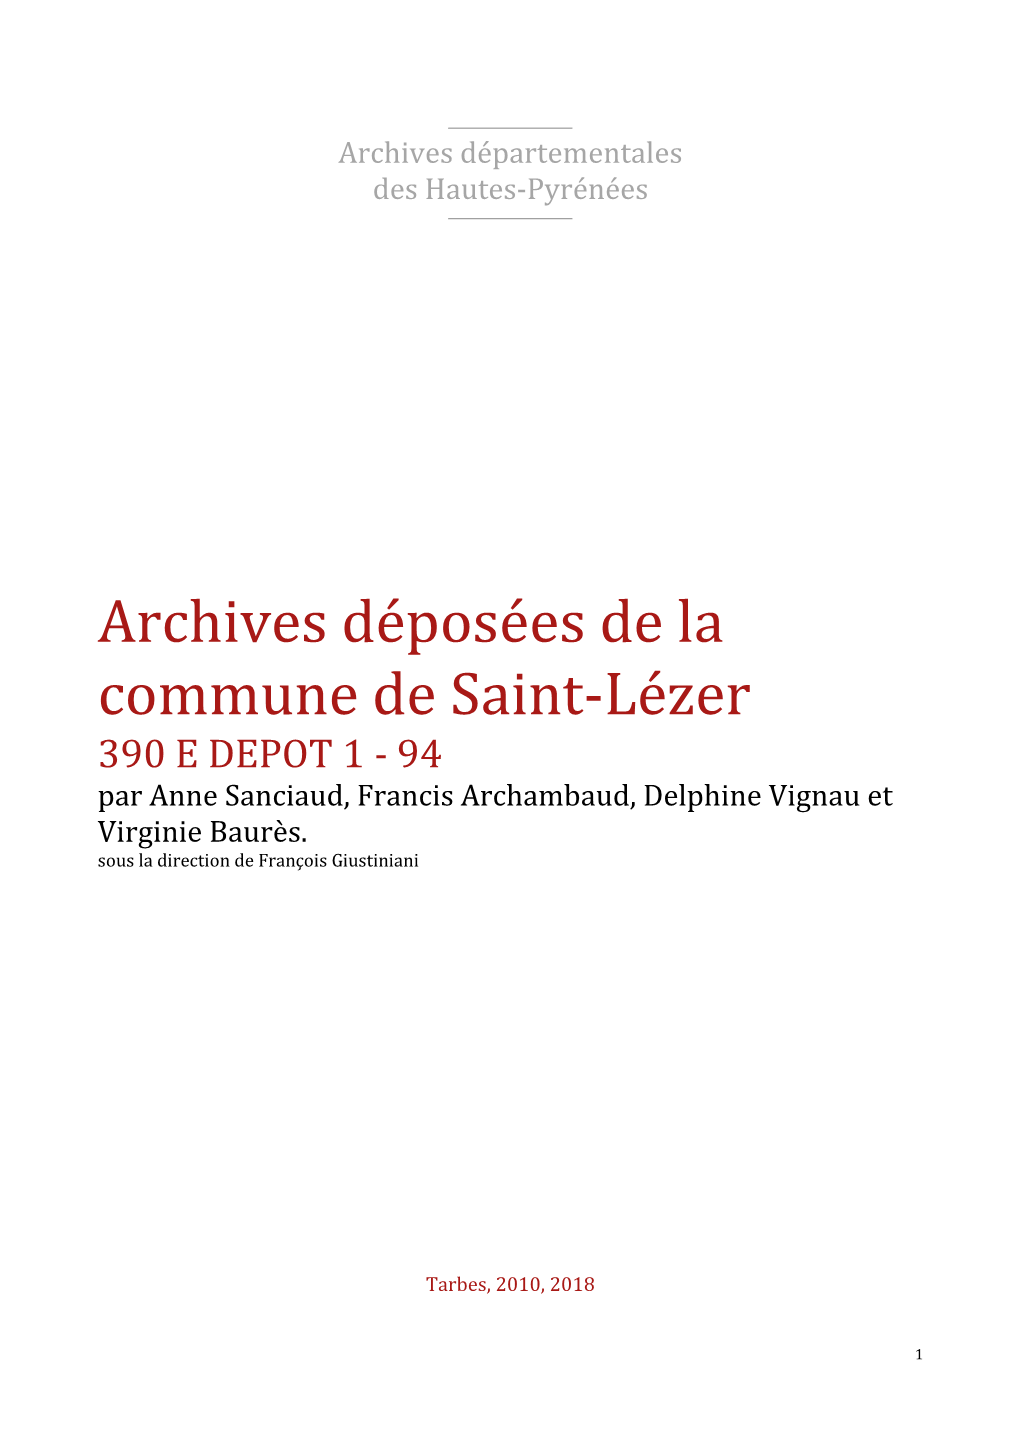 Archives Déposées De La Commune De Saint-Lézer 390 E DEPOT 1 - 94 Par Anne Sanciaud, Francis Archambaud, Delphine Vignau Et Virginie Baurès